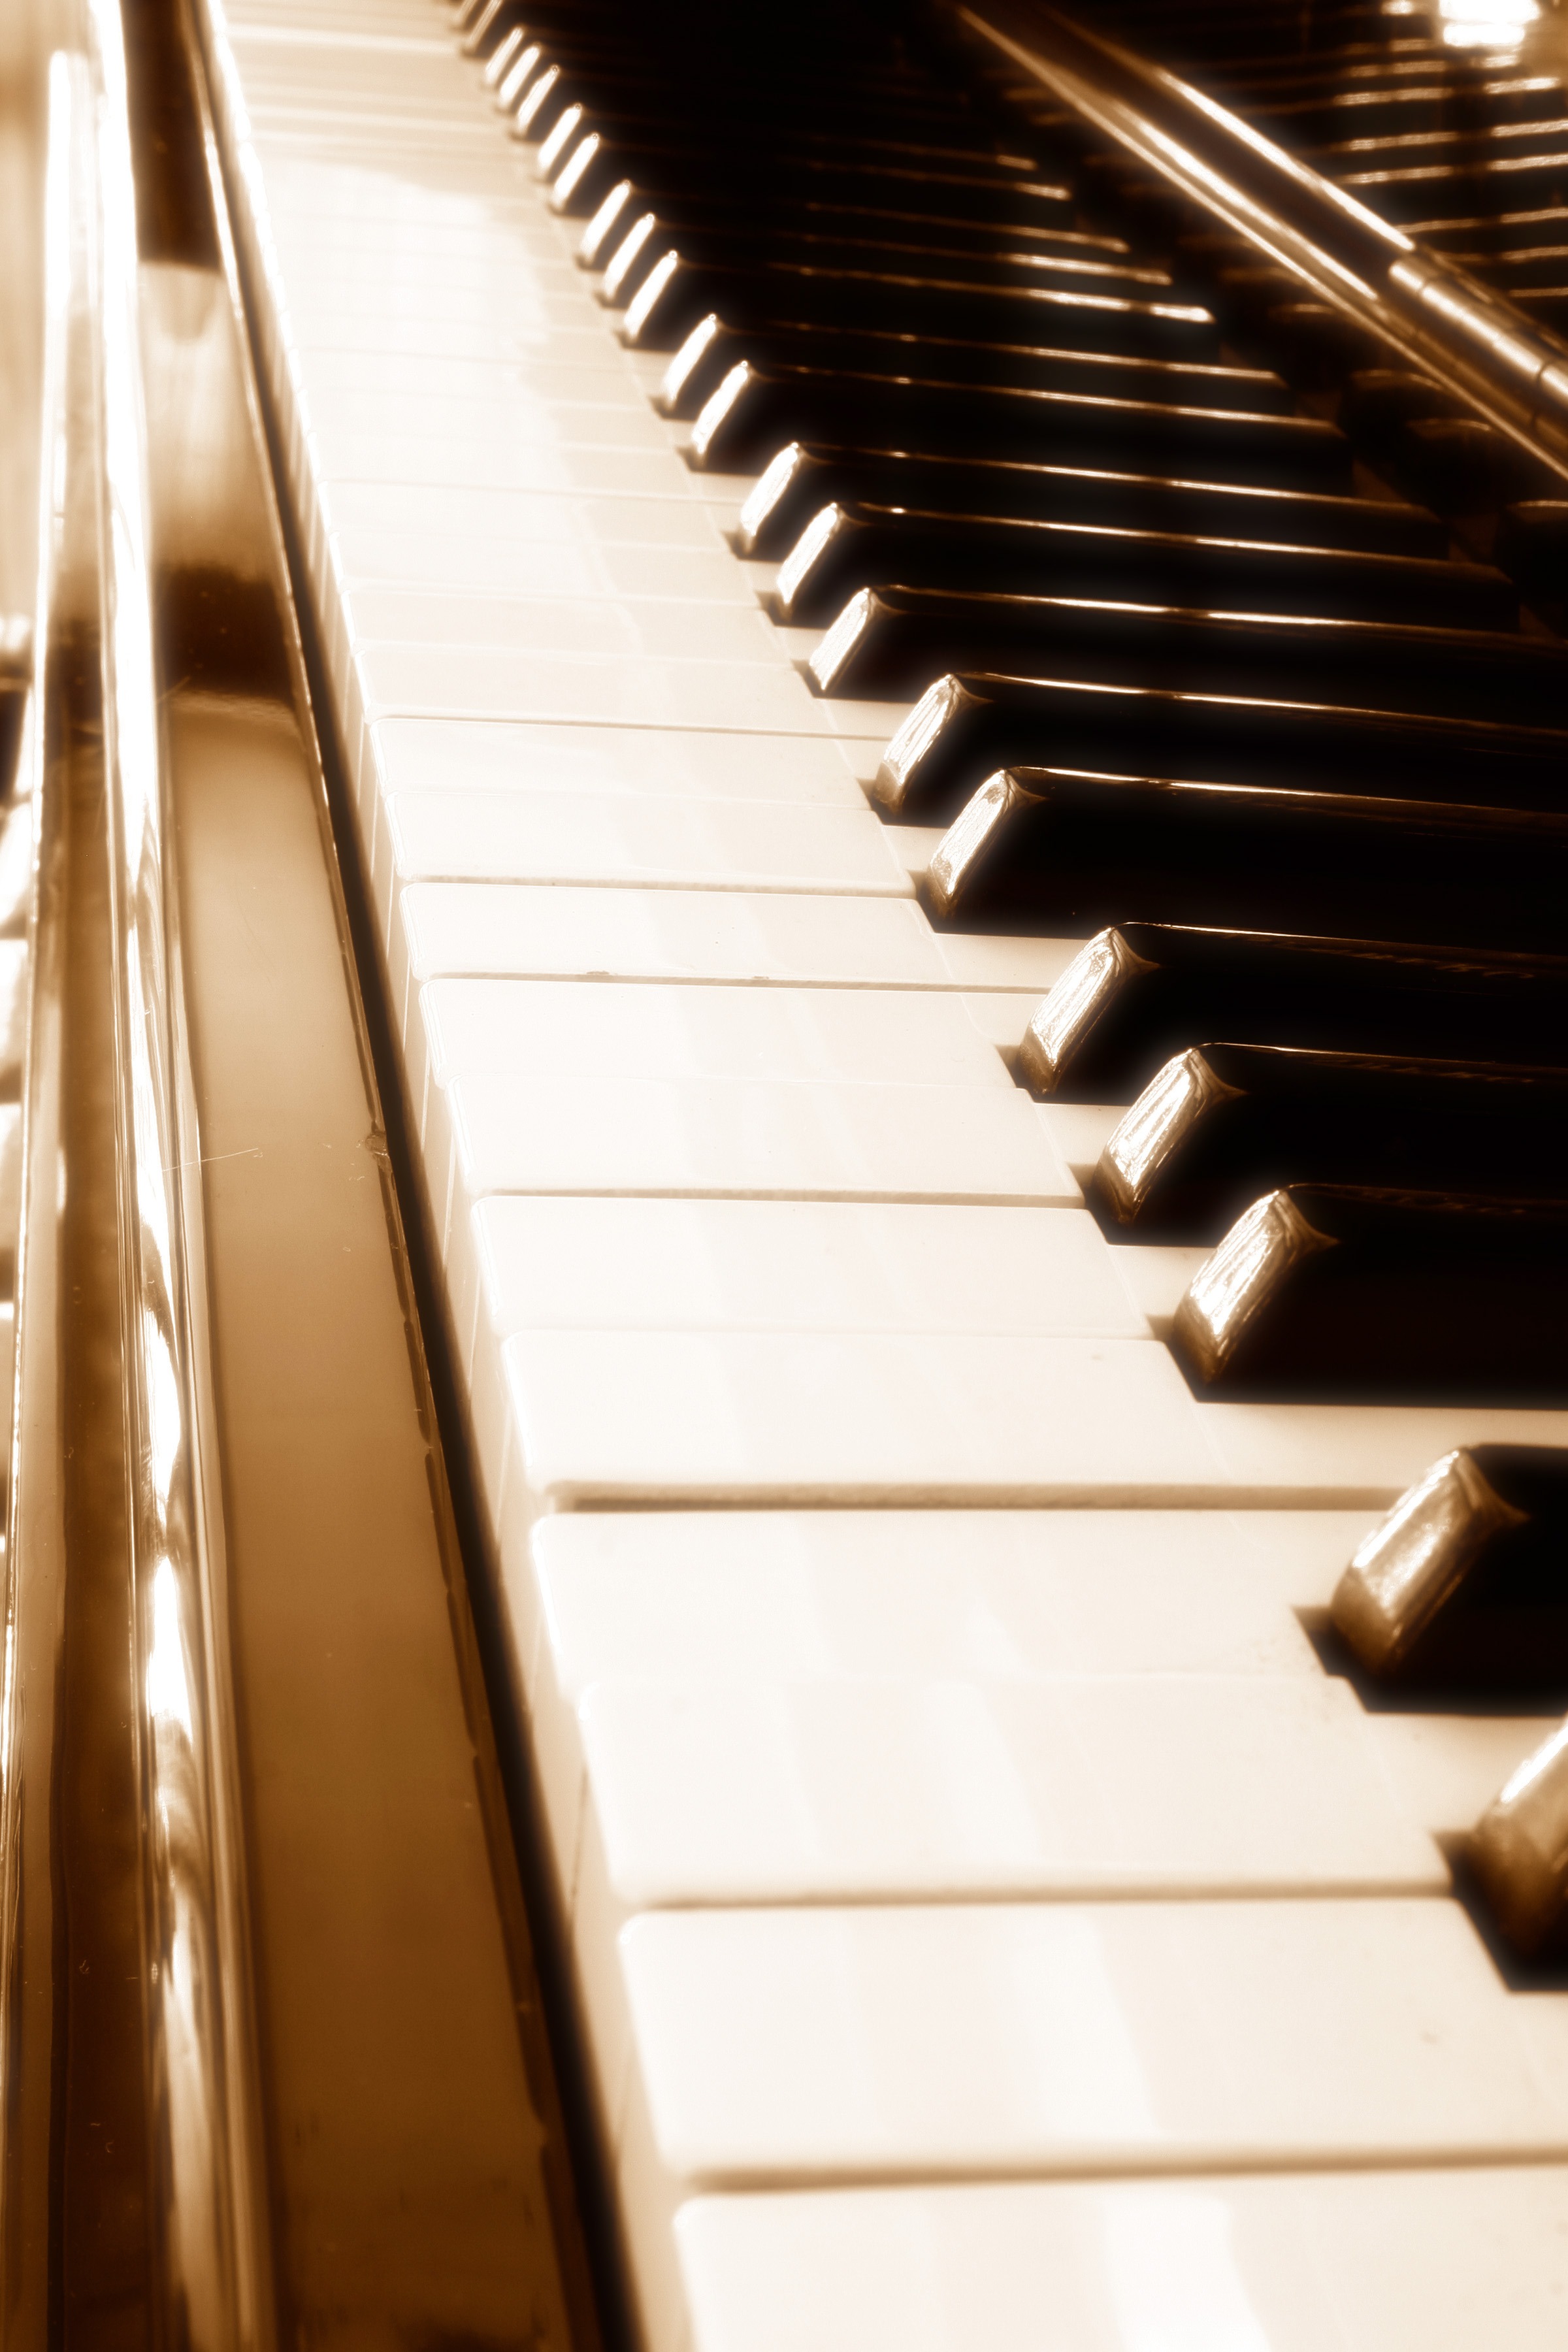 Wat is een goede piano? Piano-expert legt uit waar je op moet letten!